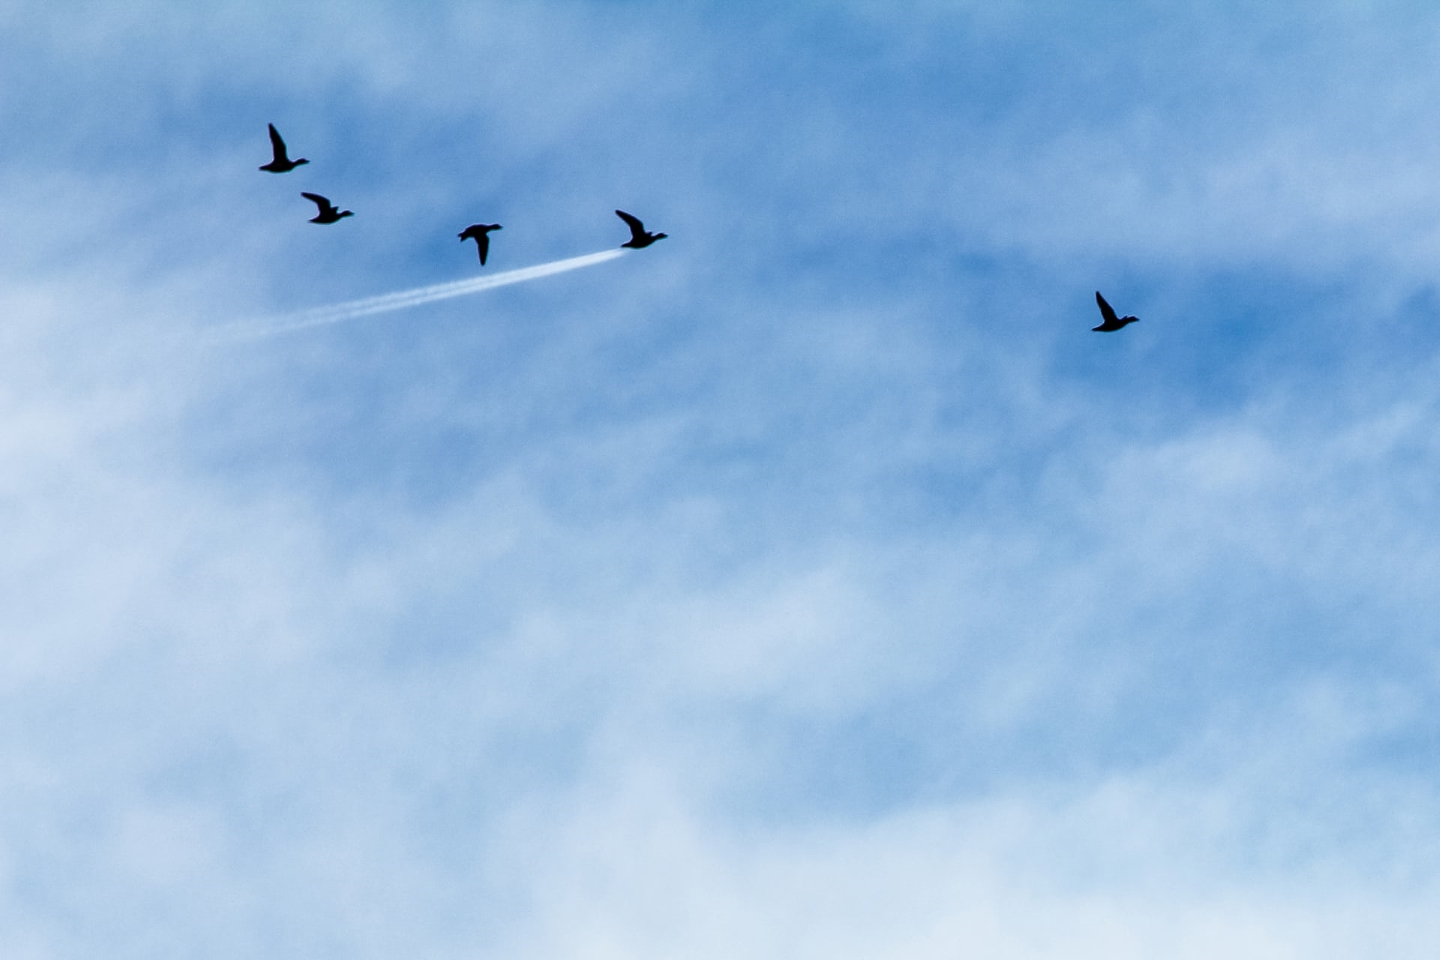 Сверхзвуковой шарж "Летящая утка". Джон Трелфал получил премию в категории «Вверху в воздухе» с этим снимком утки, летящей перед следом от реактивного самолета в Престоне, Великобритания. Фото: John Threlfal